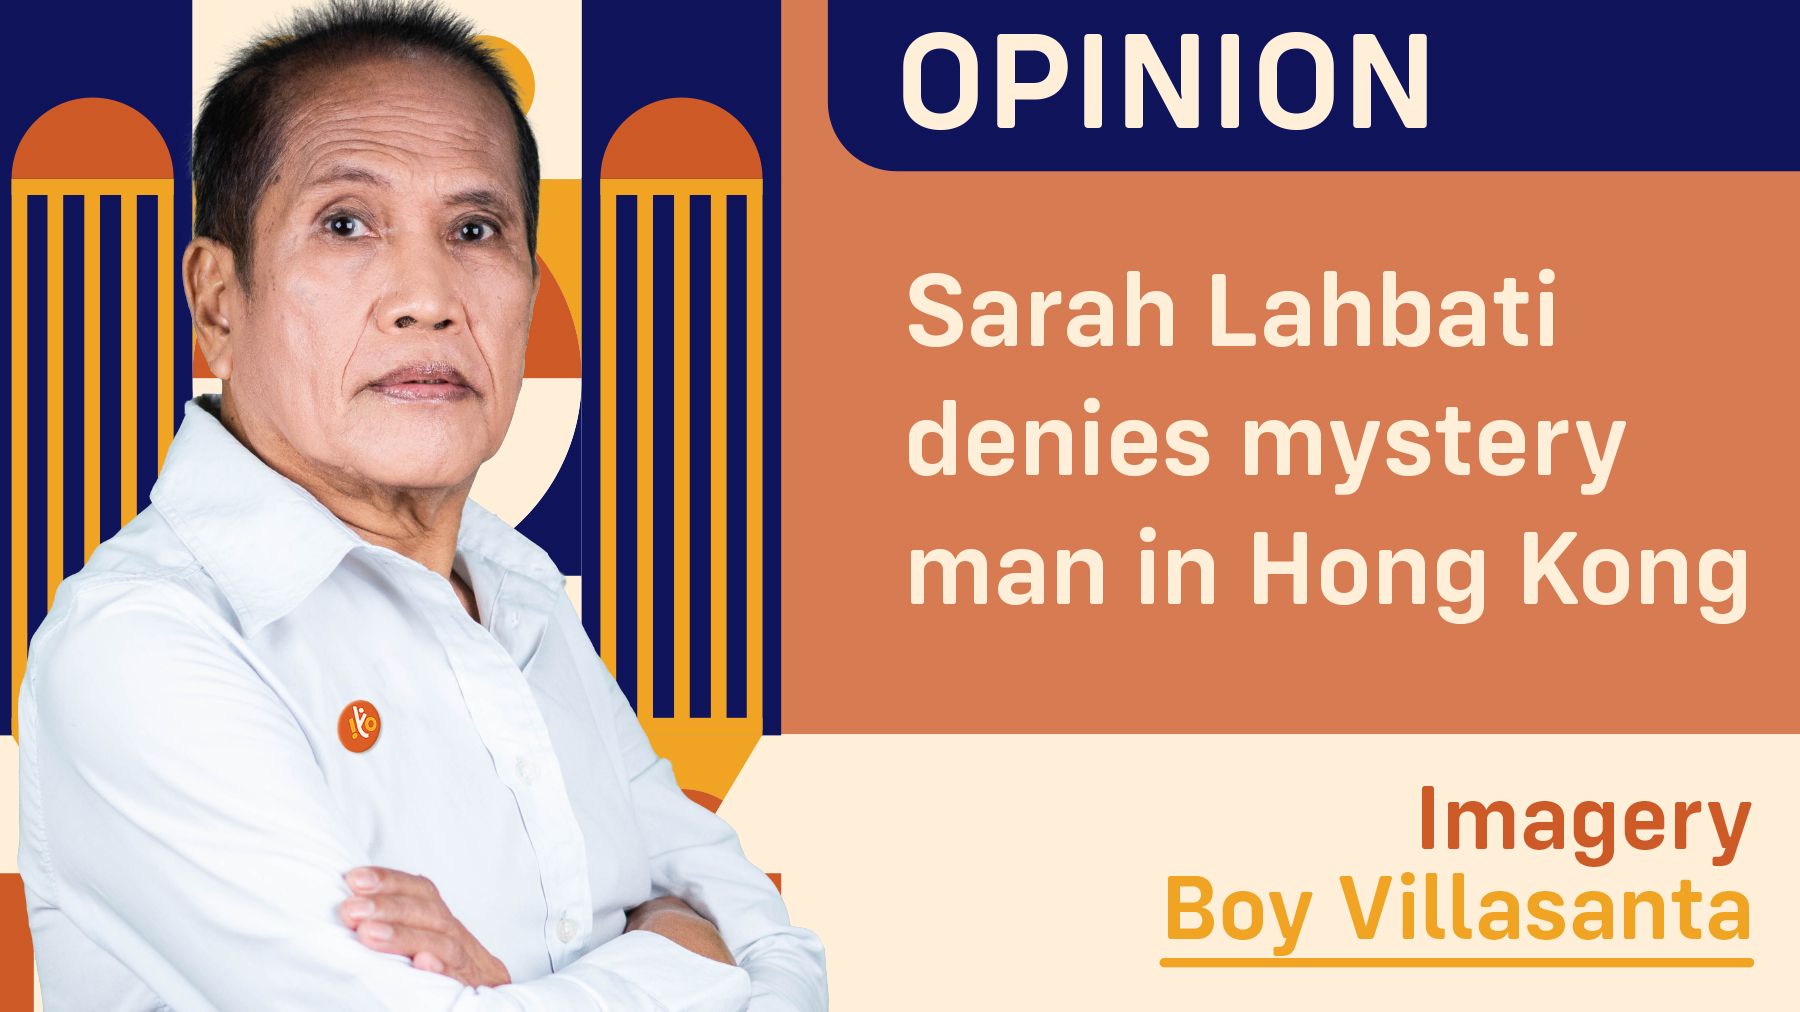 Sarah Lahbati denies mystery man in Hong Kong